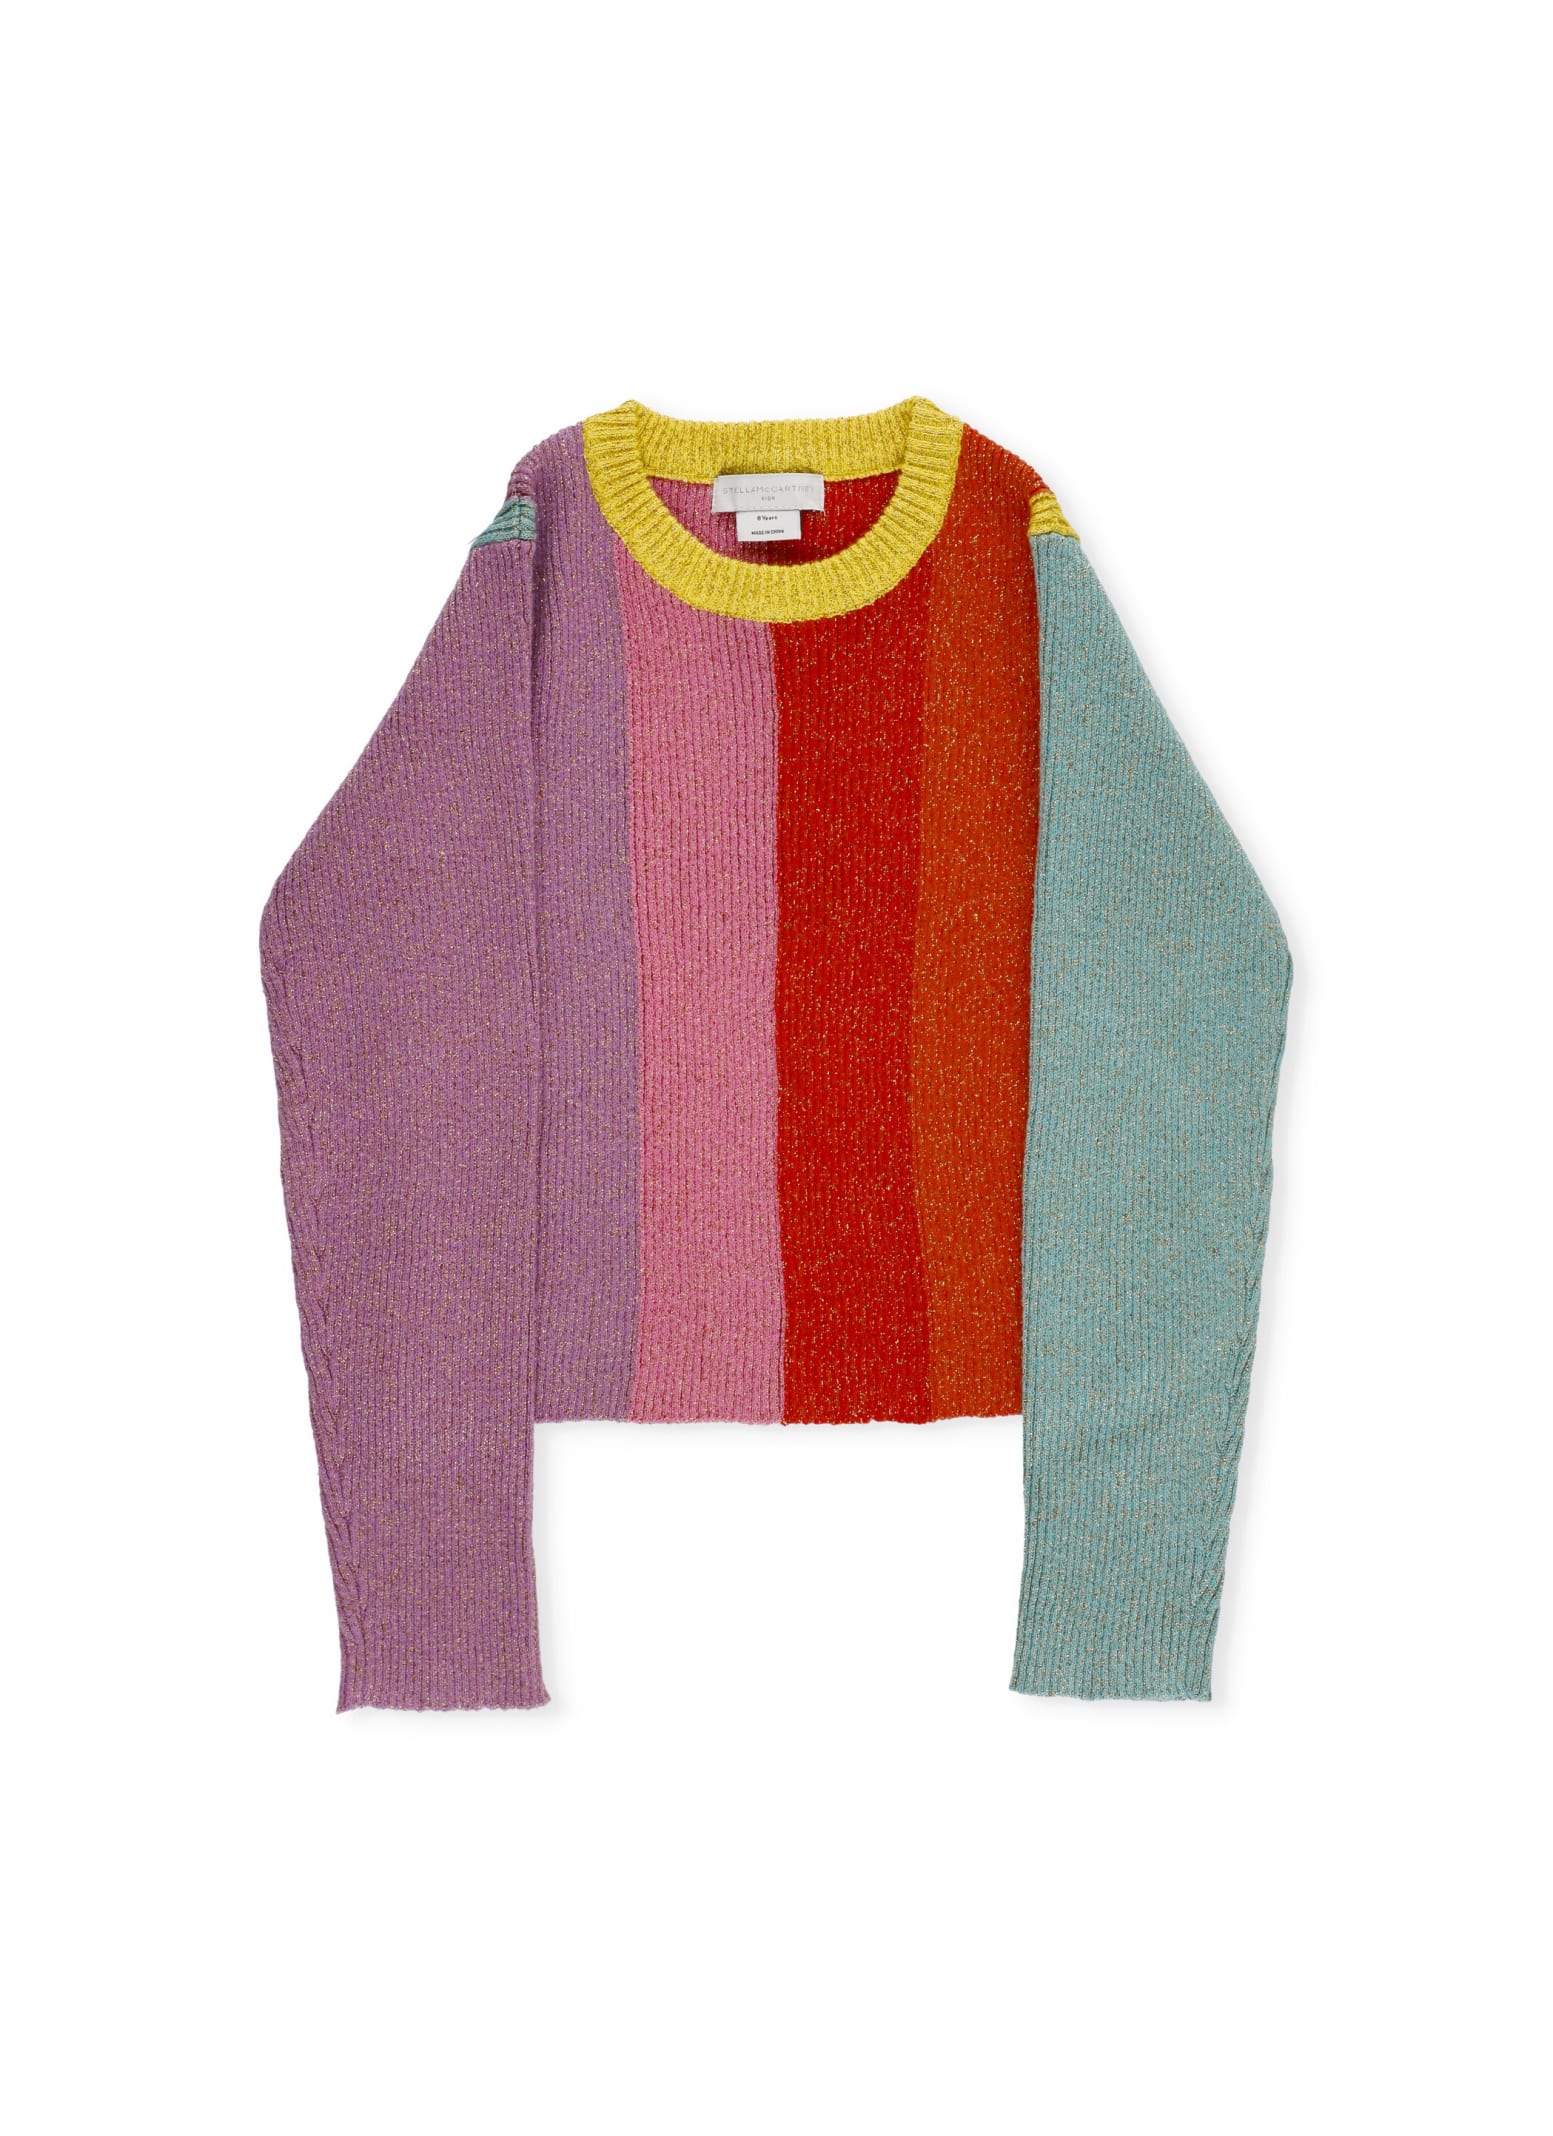 Stella McCartney Striped Sweater With Lurex Details